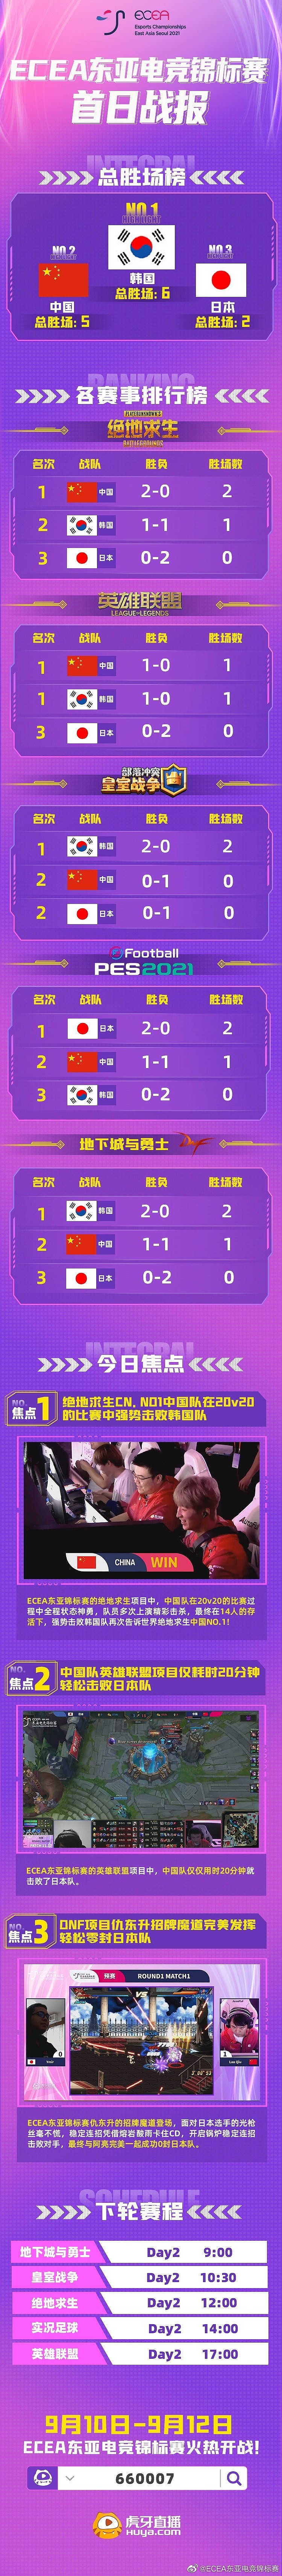 ECEA东亚电竞锦标赛首日战报：韩国队总胜场暂居第一，中国第二 - 1